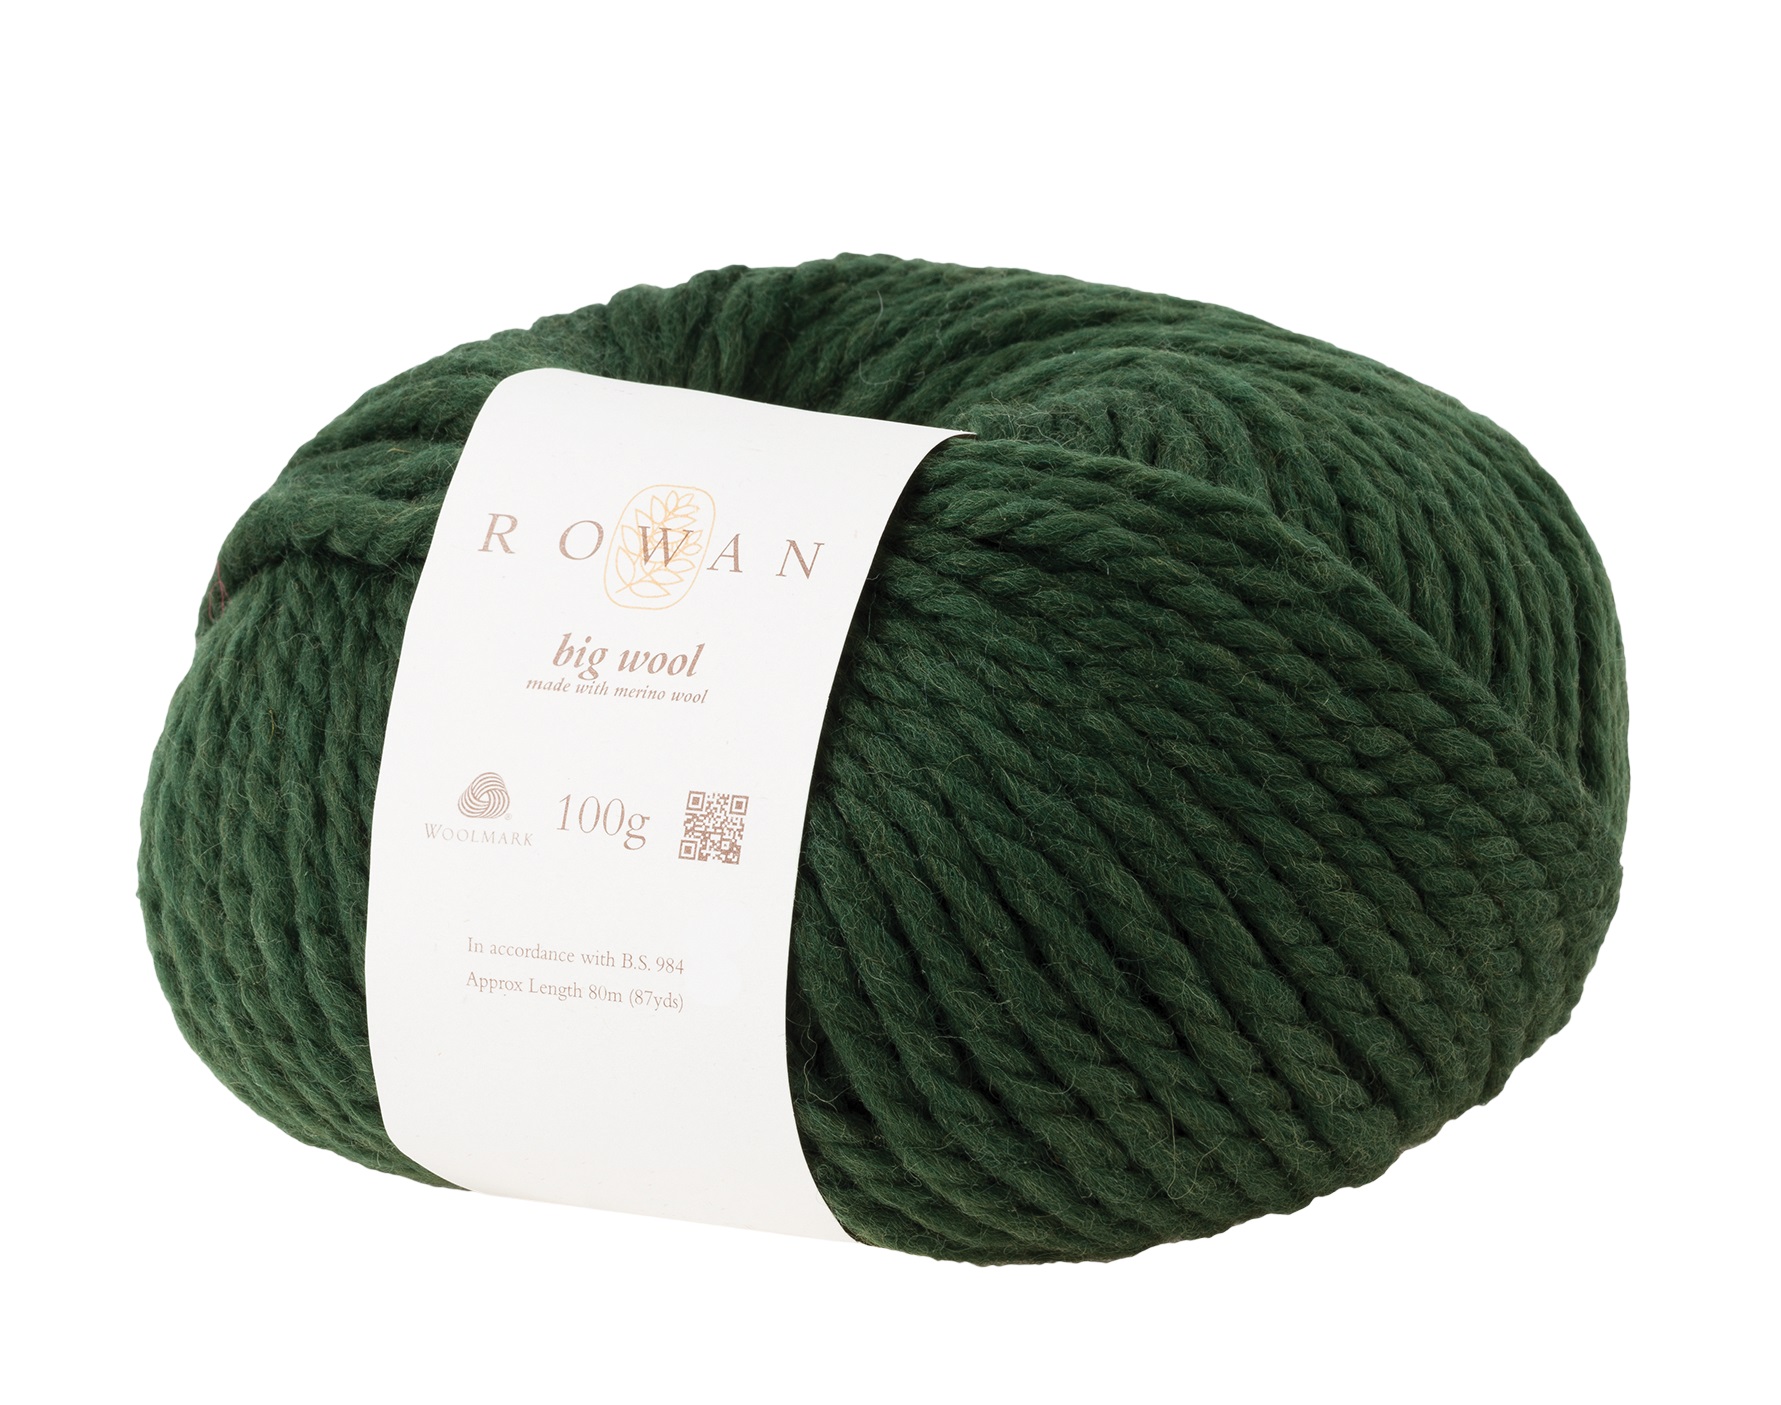 Rowan Big wool - 43 Forest